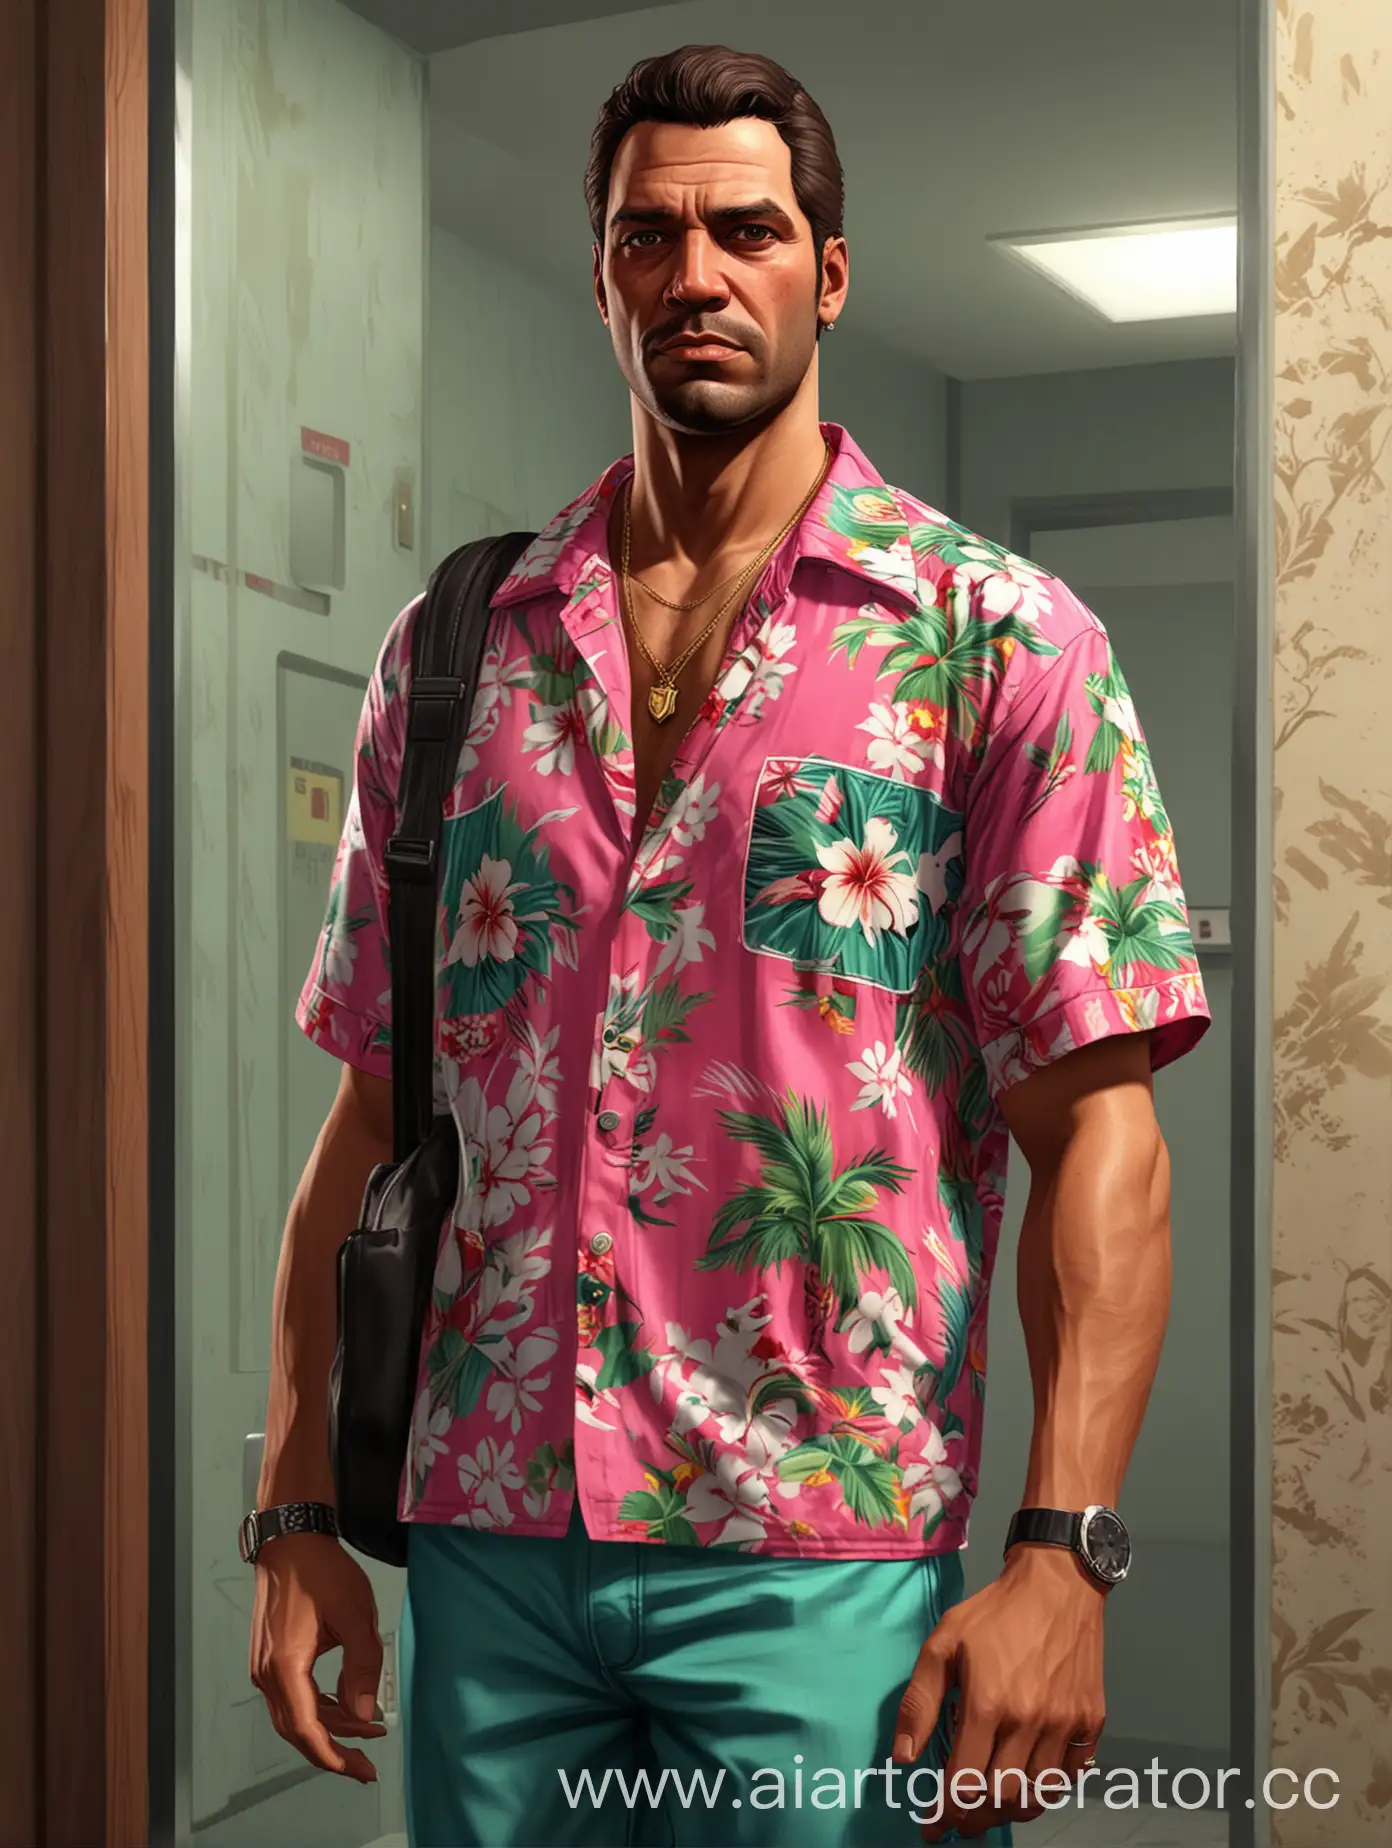 Персонаж GTA Vice City стоит в лифте с спортивной сумкой в гавайской рубашке у зеркала. Лицо как у главного героя игры гта. 